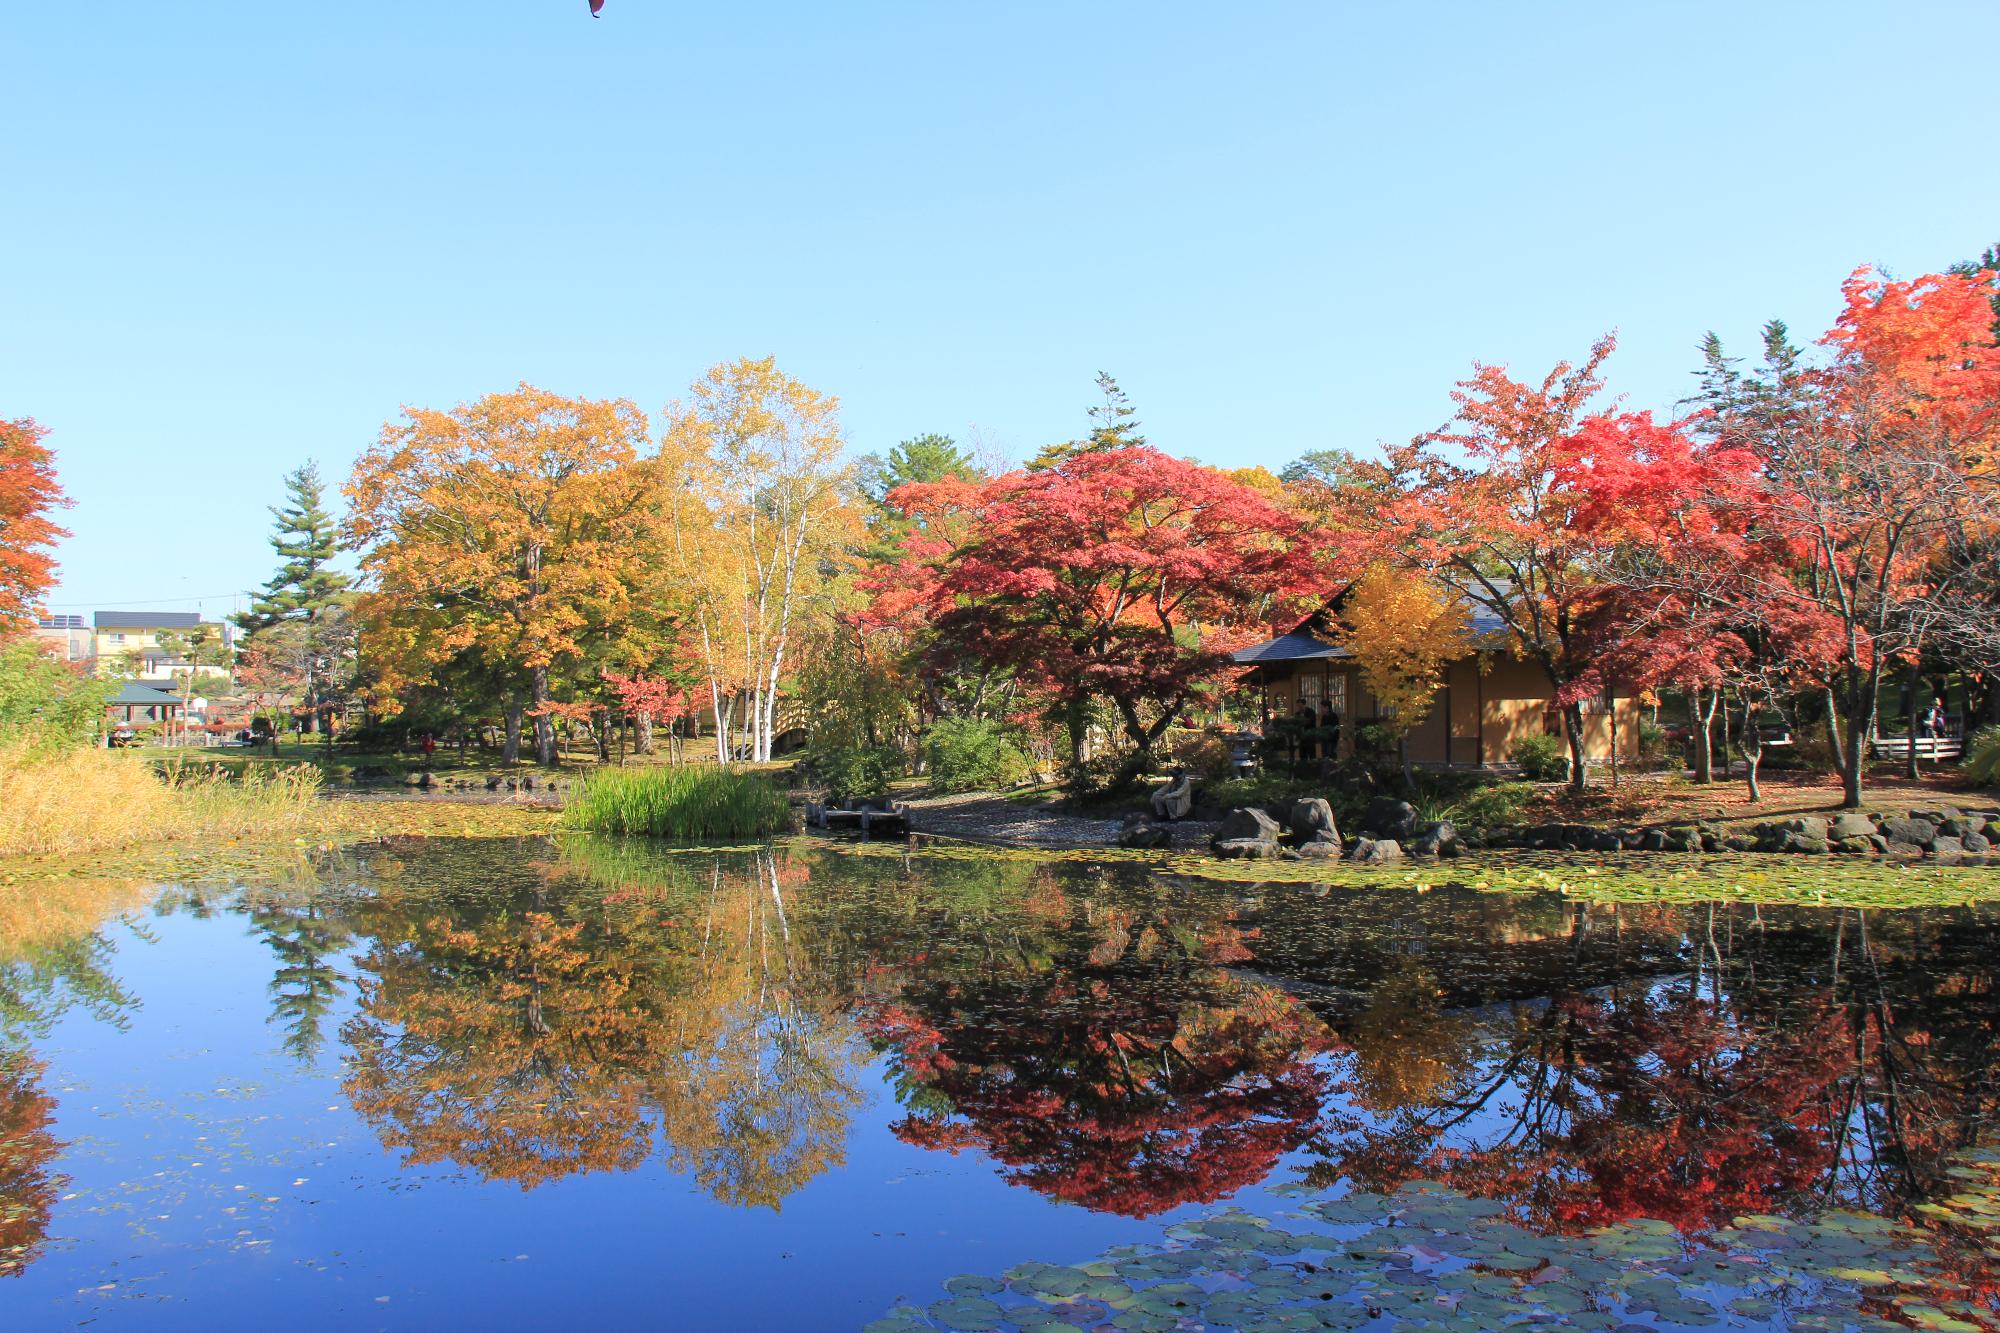 色づいた紅葉が池の水面にも映り込んでいる玉泉館跡地公園の写真